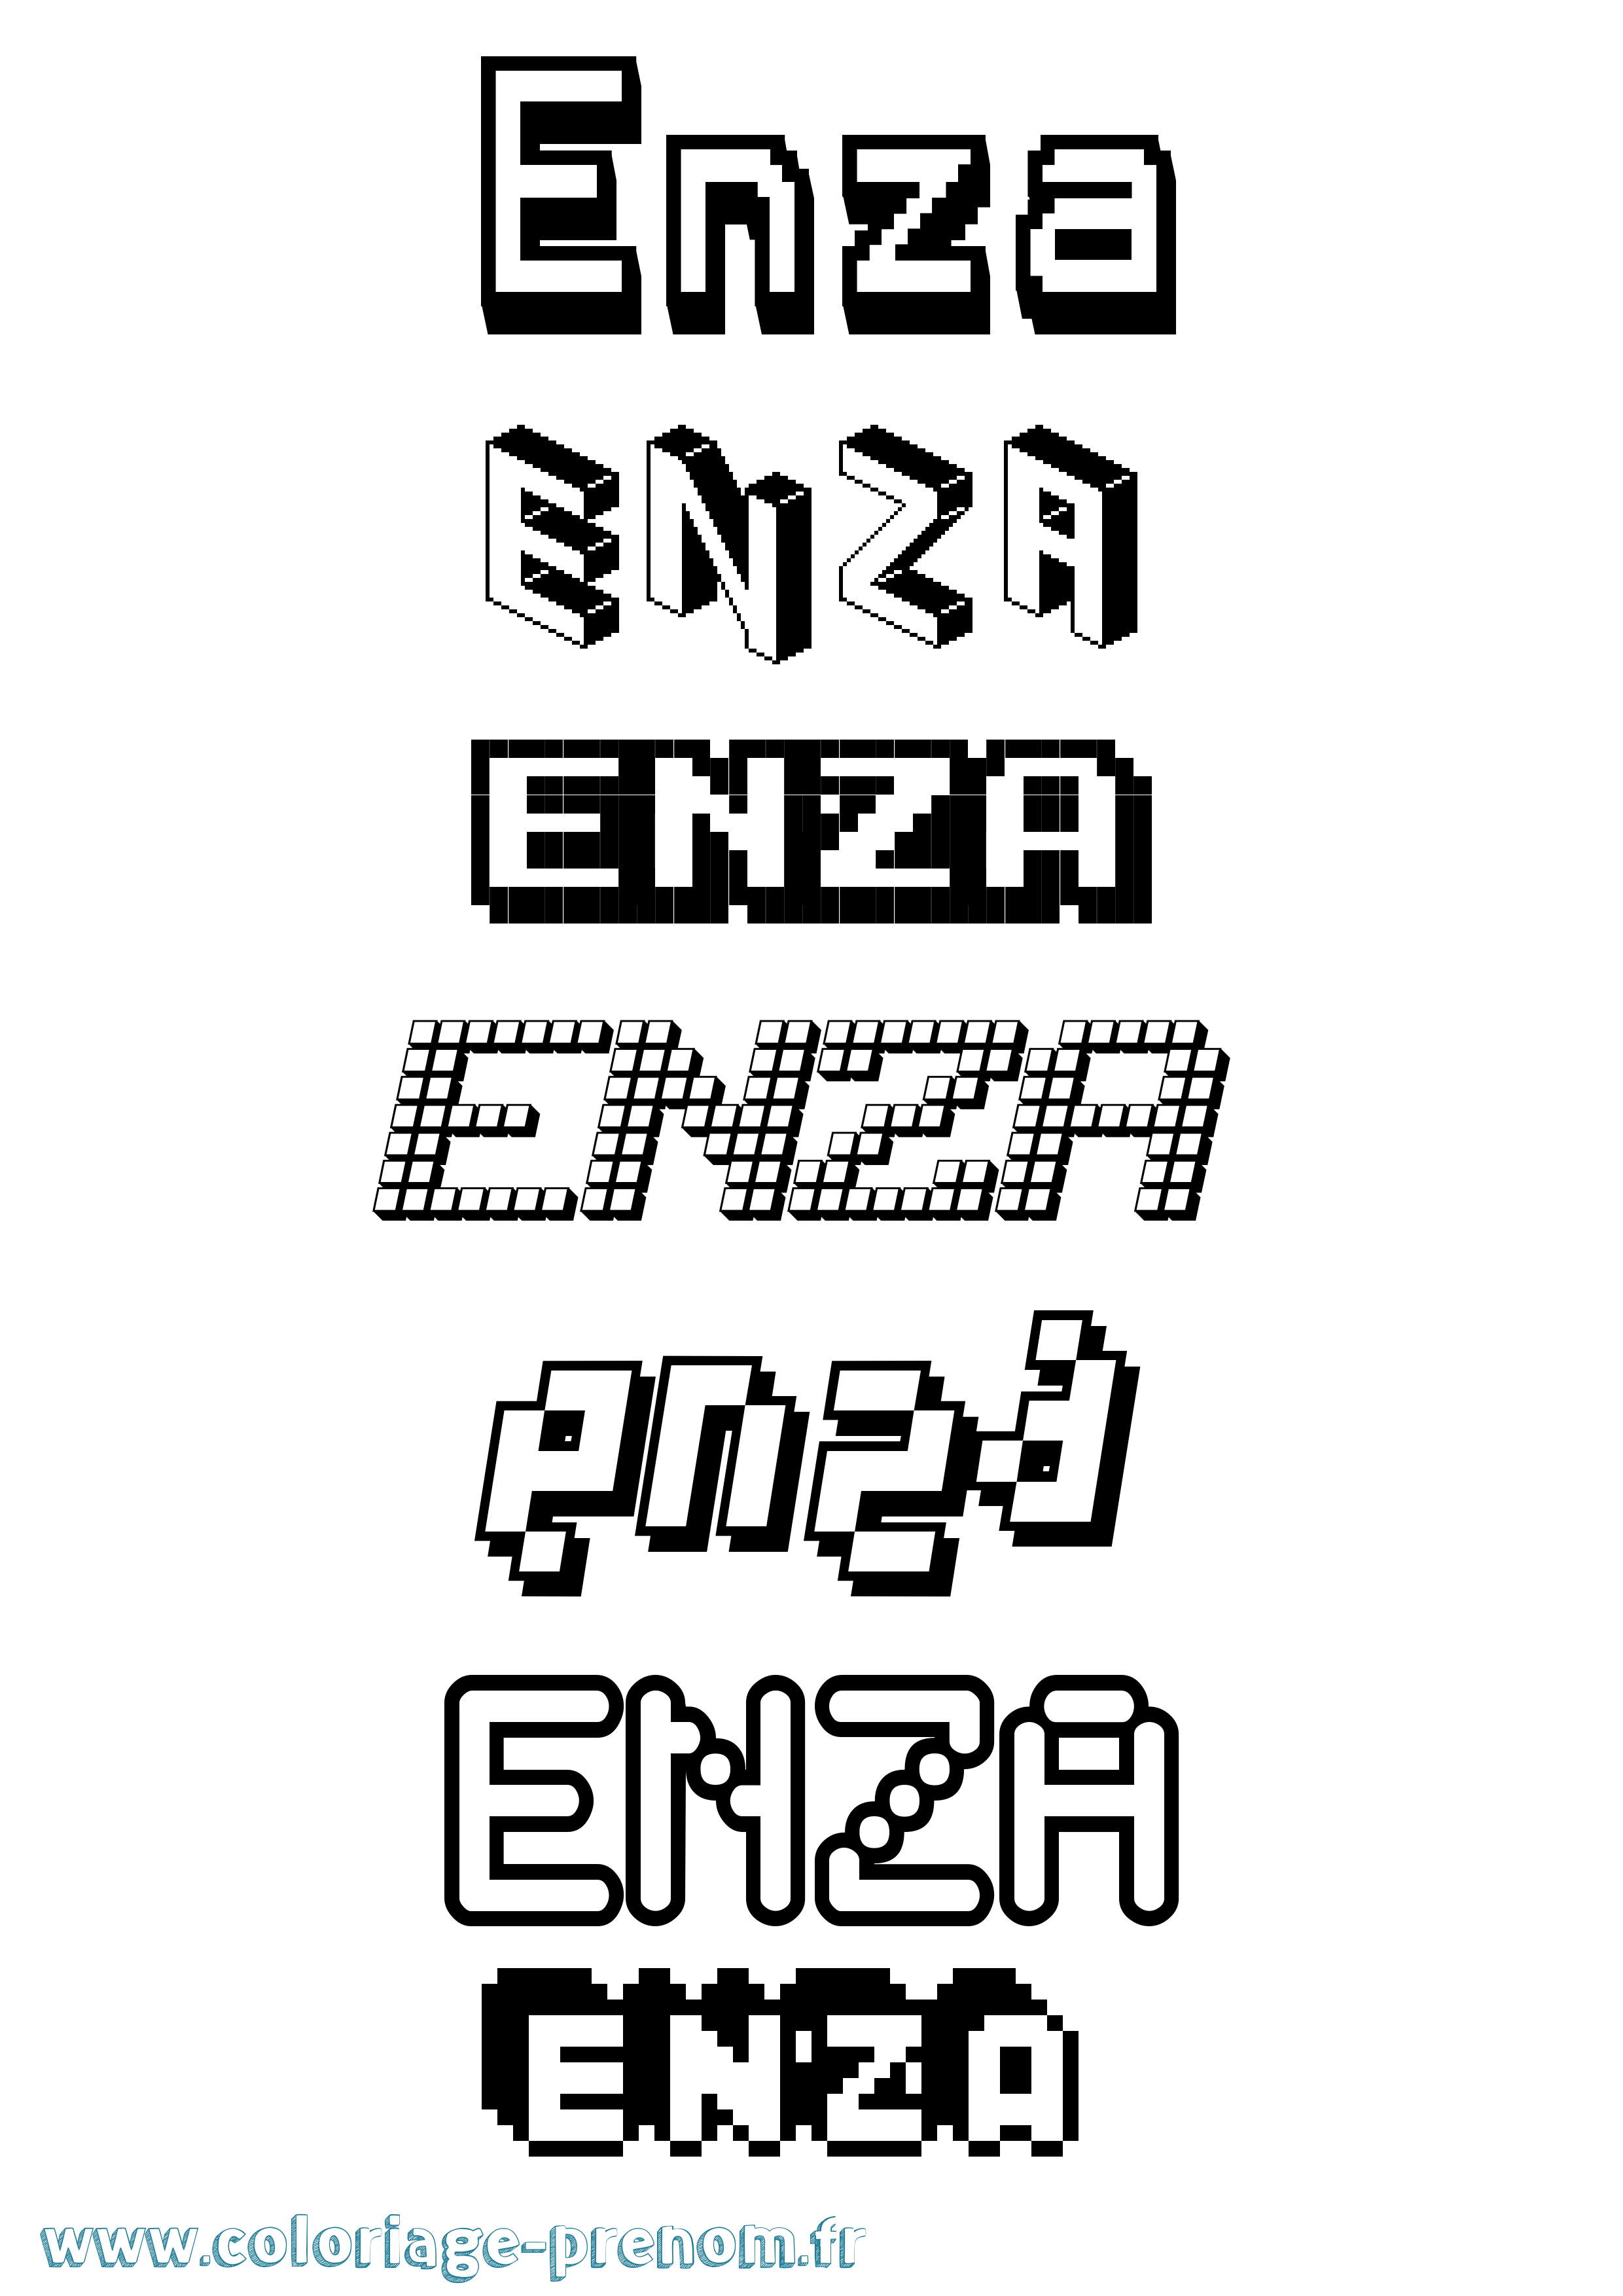 Coloriage prénom Enza Pixel